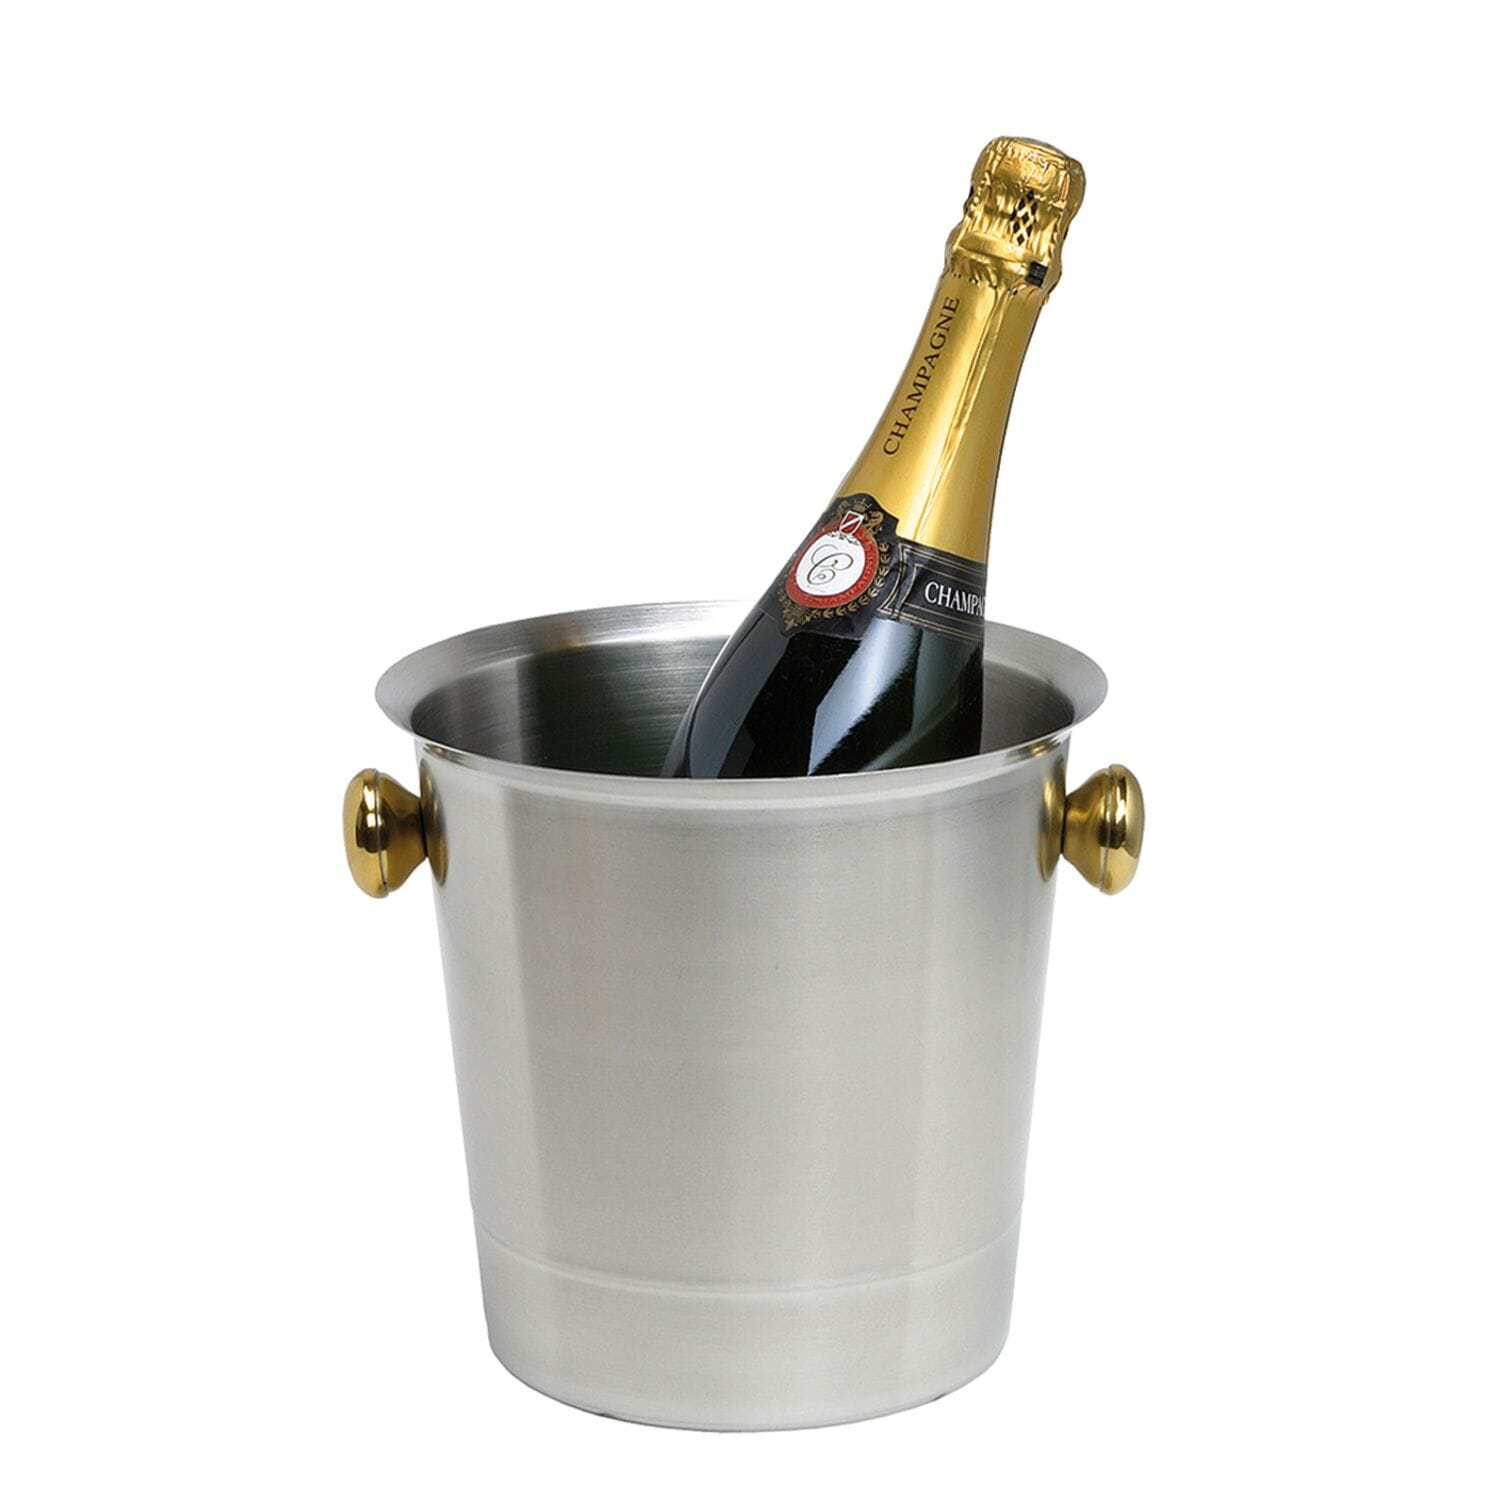 Non null bar Taglia libera Argento Secchiello per champagne in acciaio INOX per casa feste altamente lucidato per bottiglie di vino e champagne Oister7 